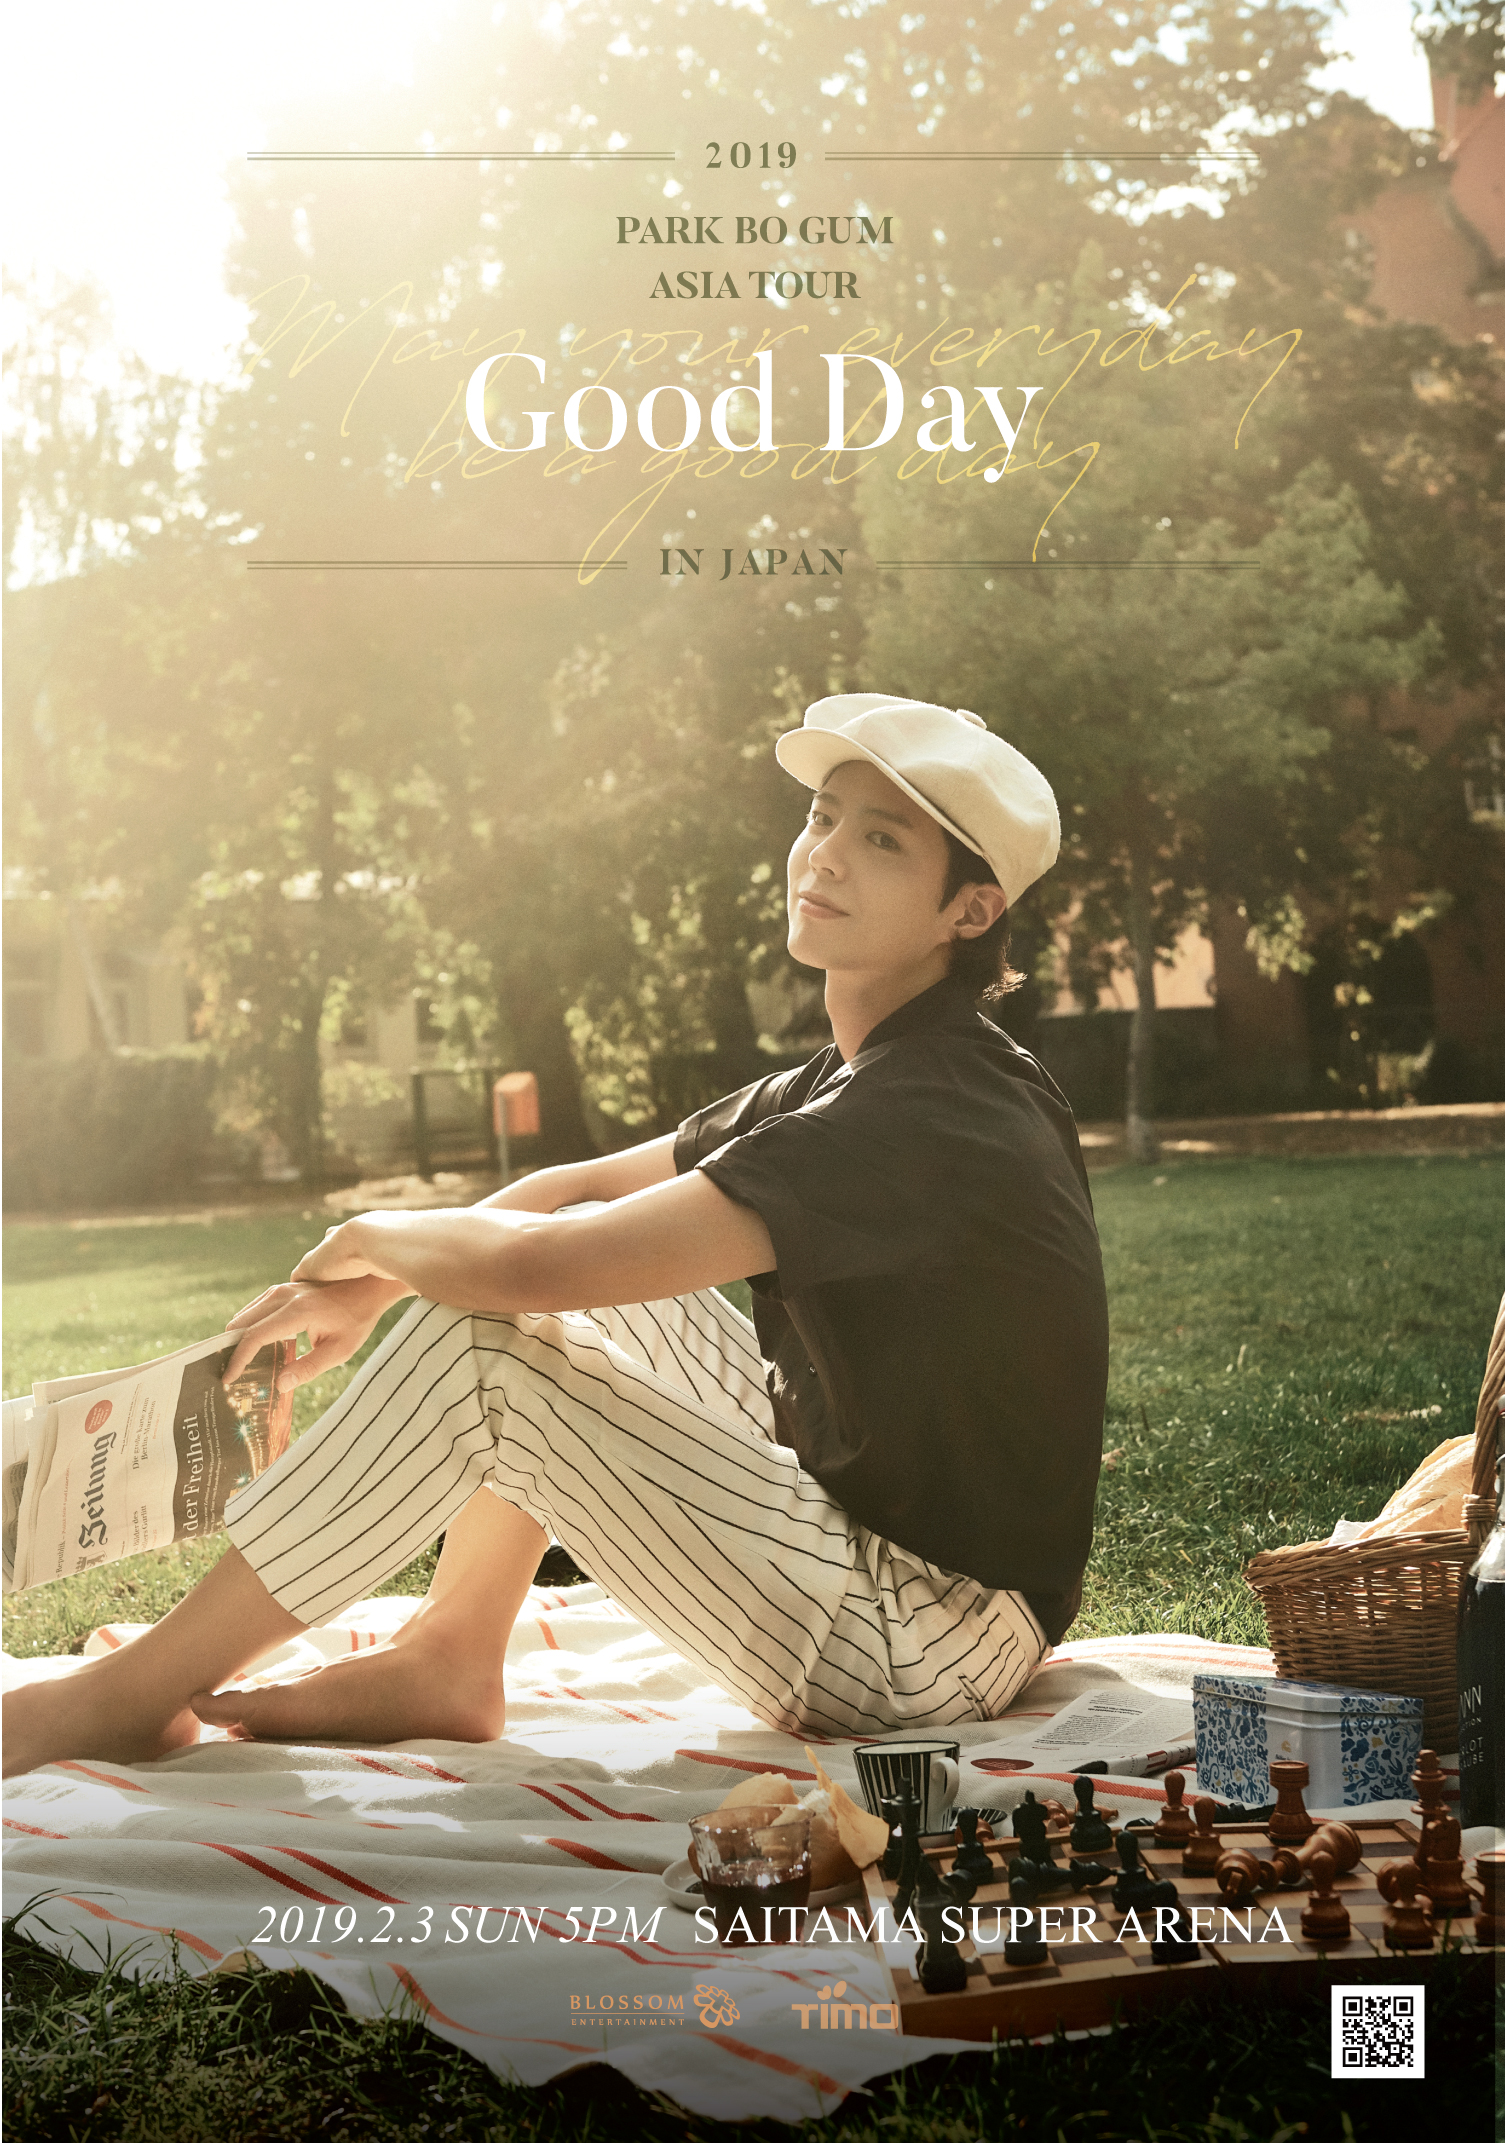 パクボゴム Good Day ファンミーティング DVD - K-POP/アジア